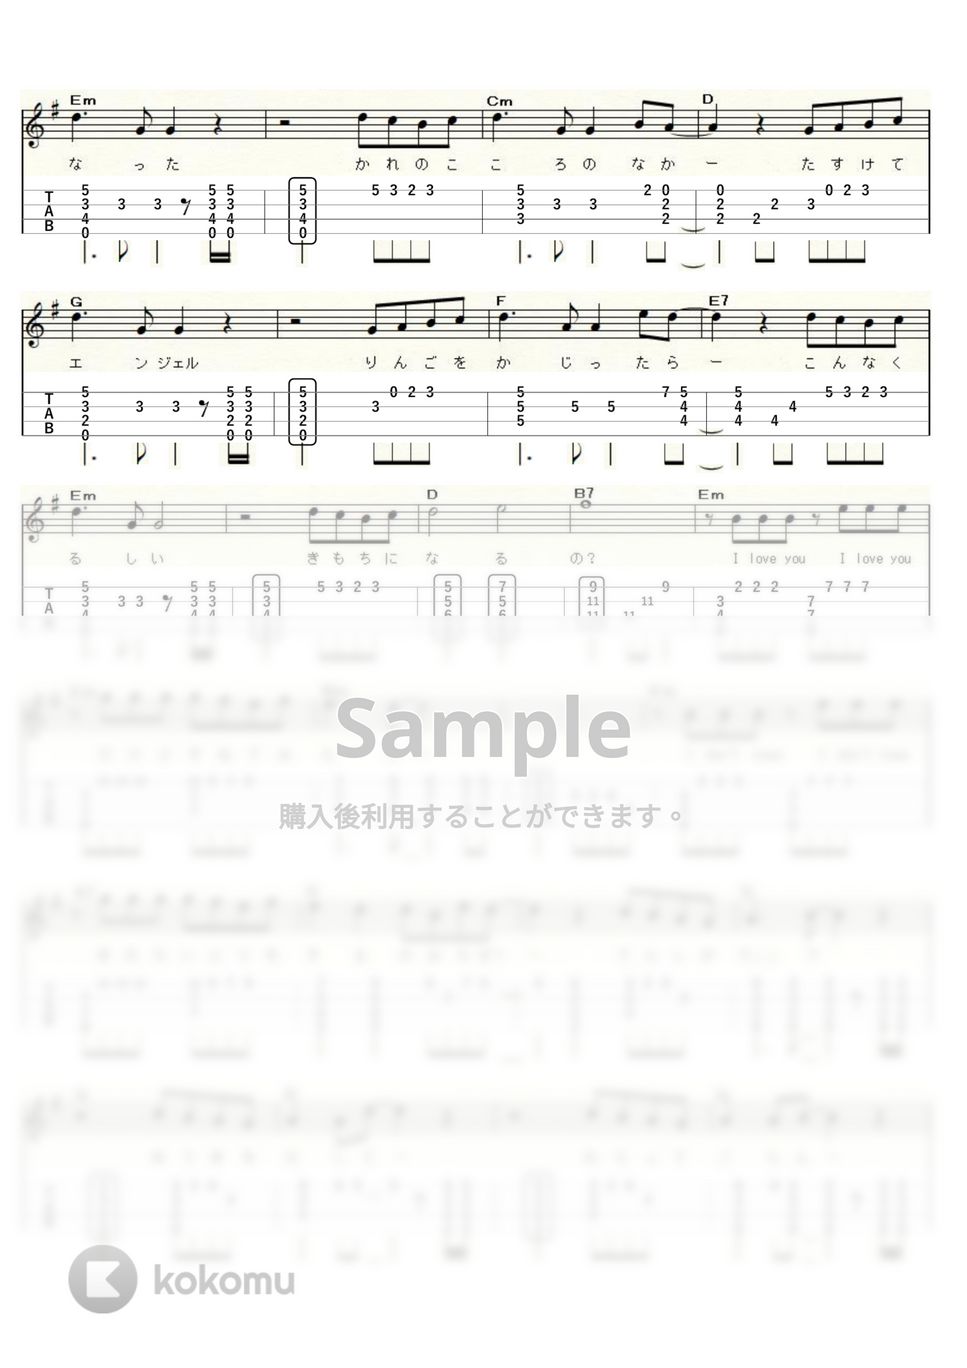 松田聖子 - 天使のウィンク (ｳｸﾚﾚｿﾛ / High-G,Low-G / 中級) by ukulelepapa